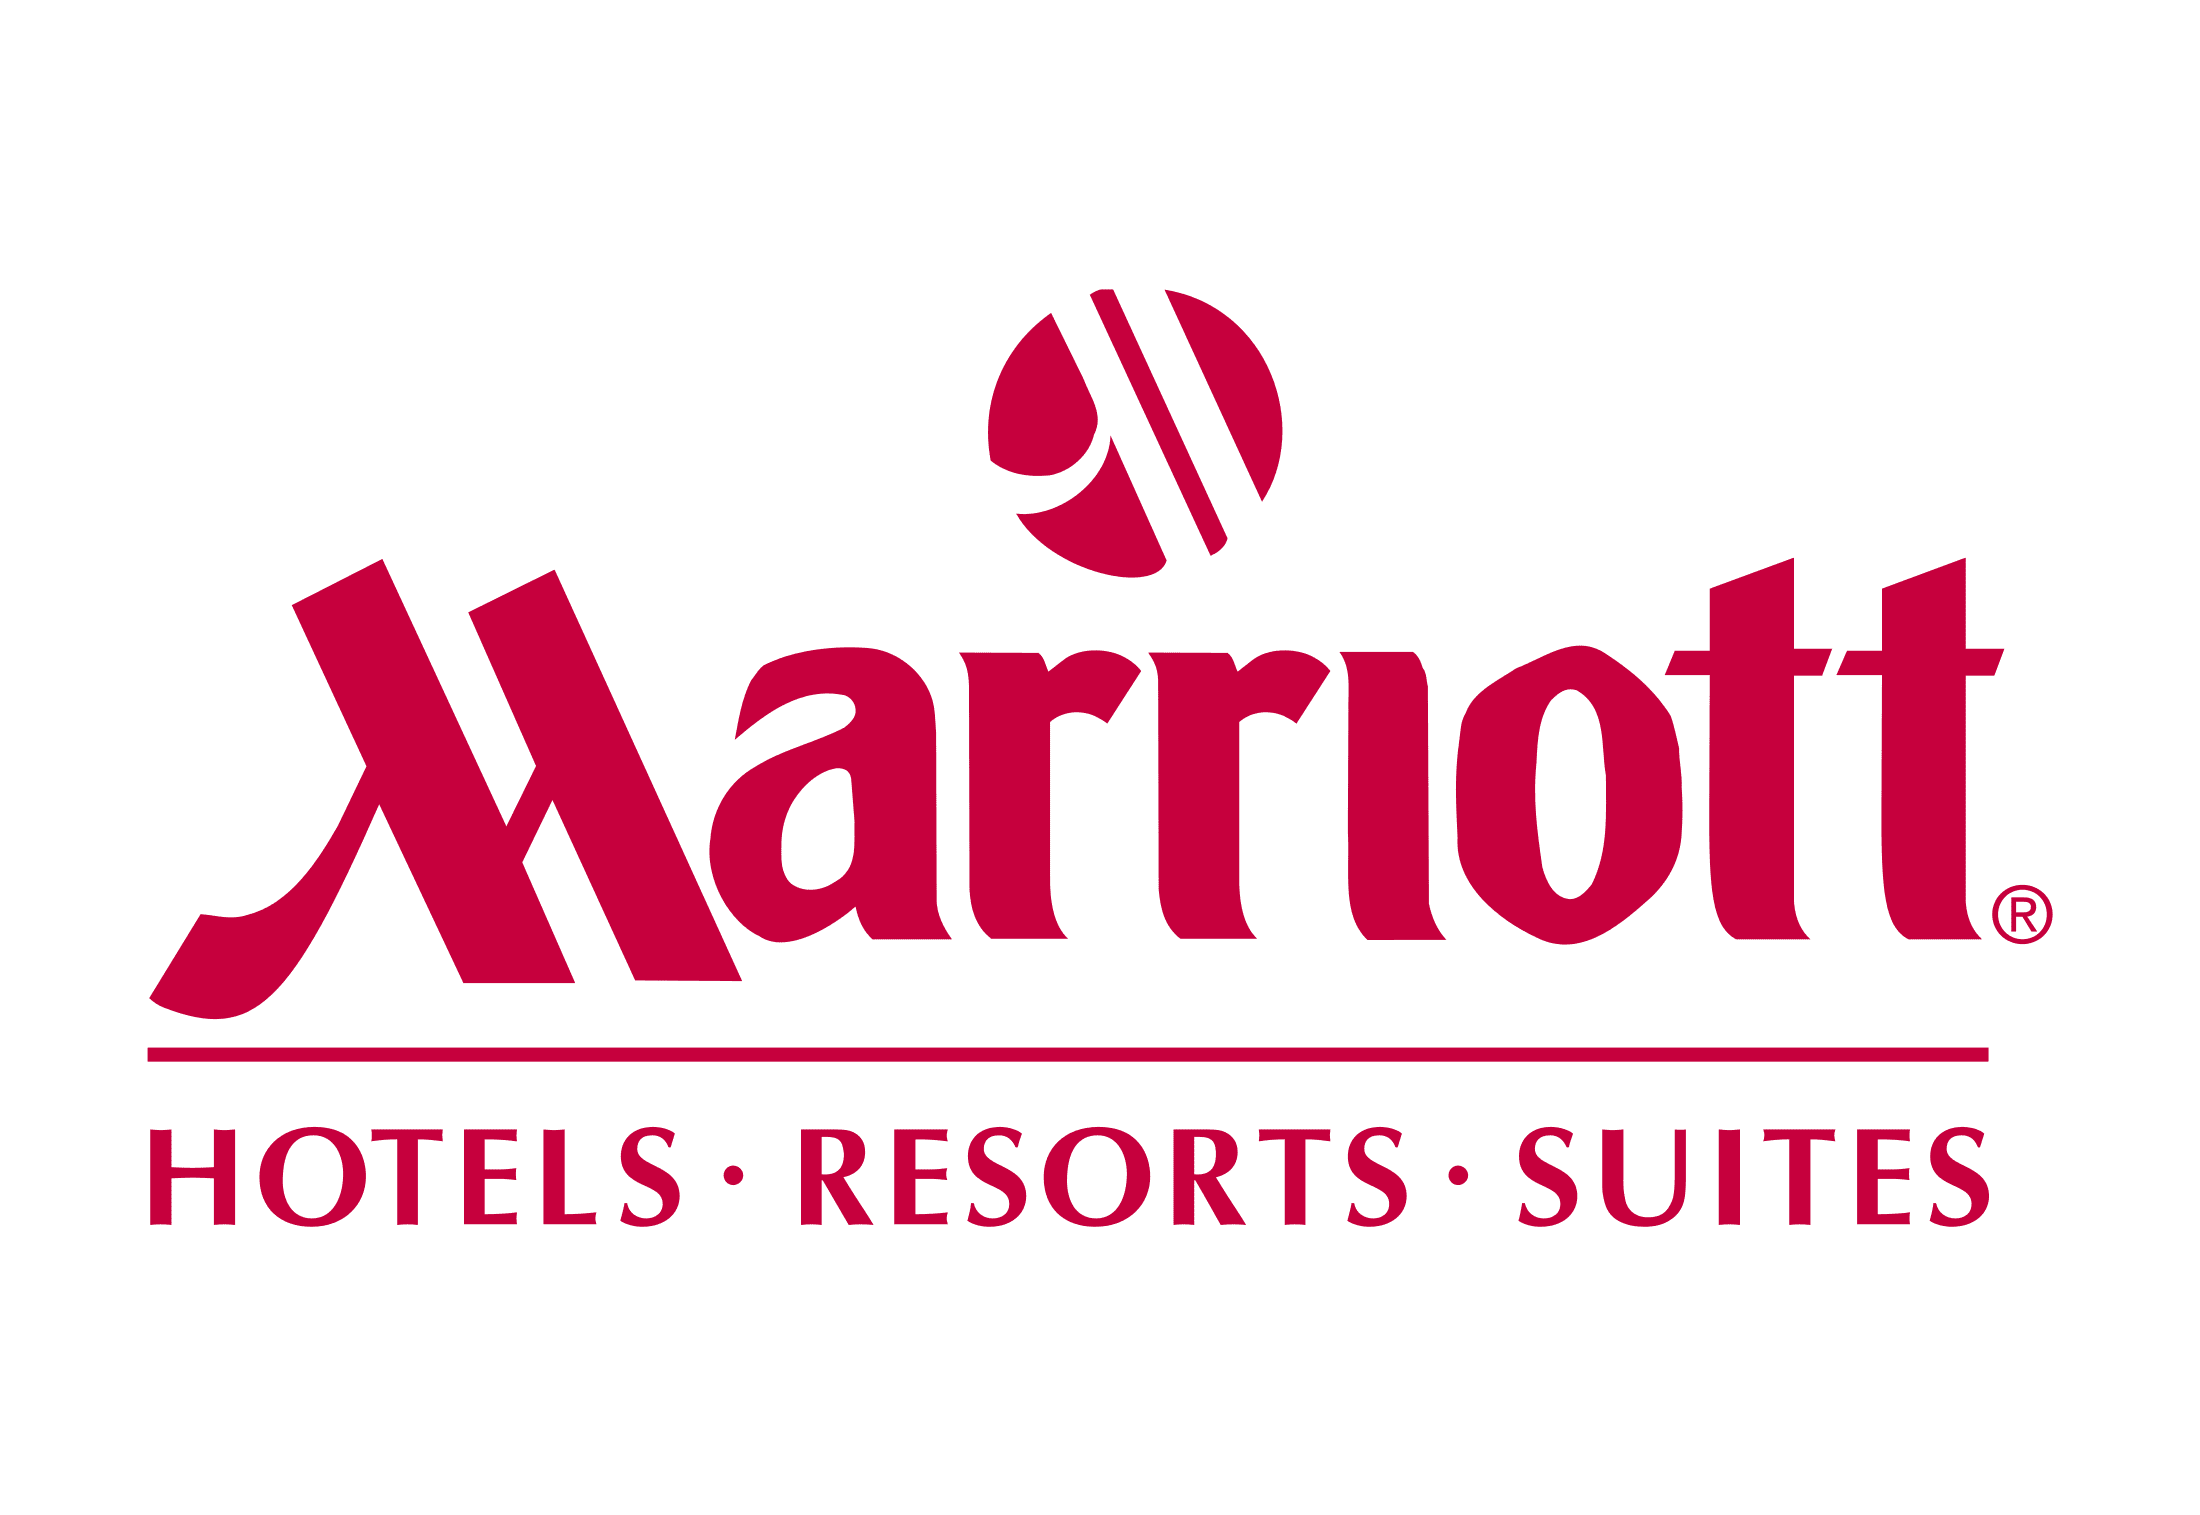 kisspng-marriott-international-jw-marriott-hotels-marriott-5b3817375752e5.7577818715304026153577